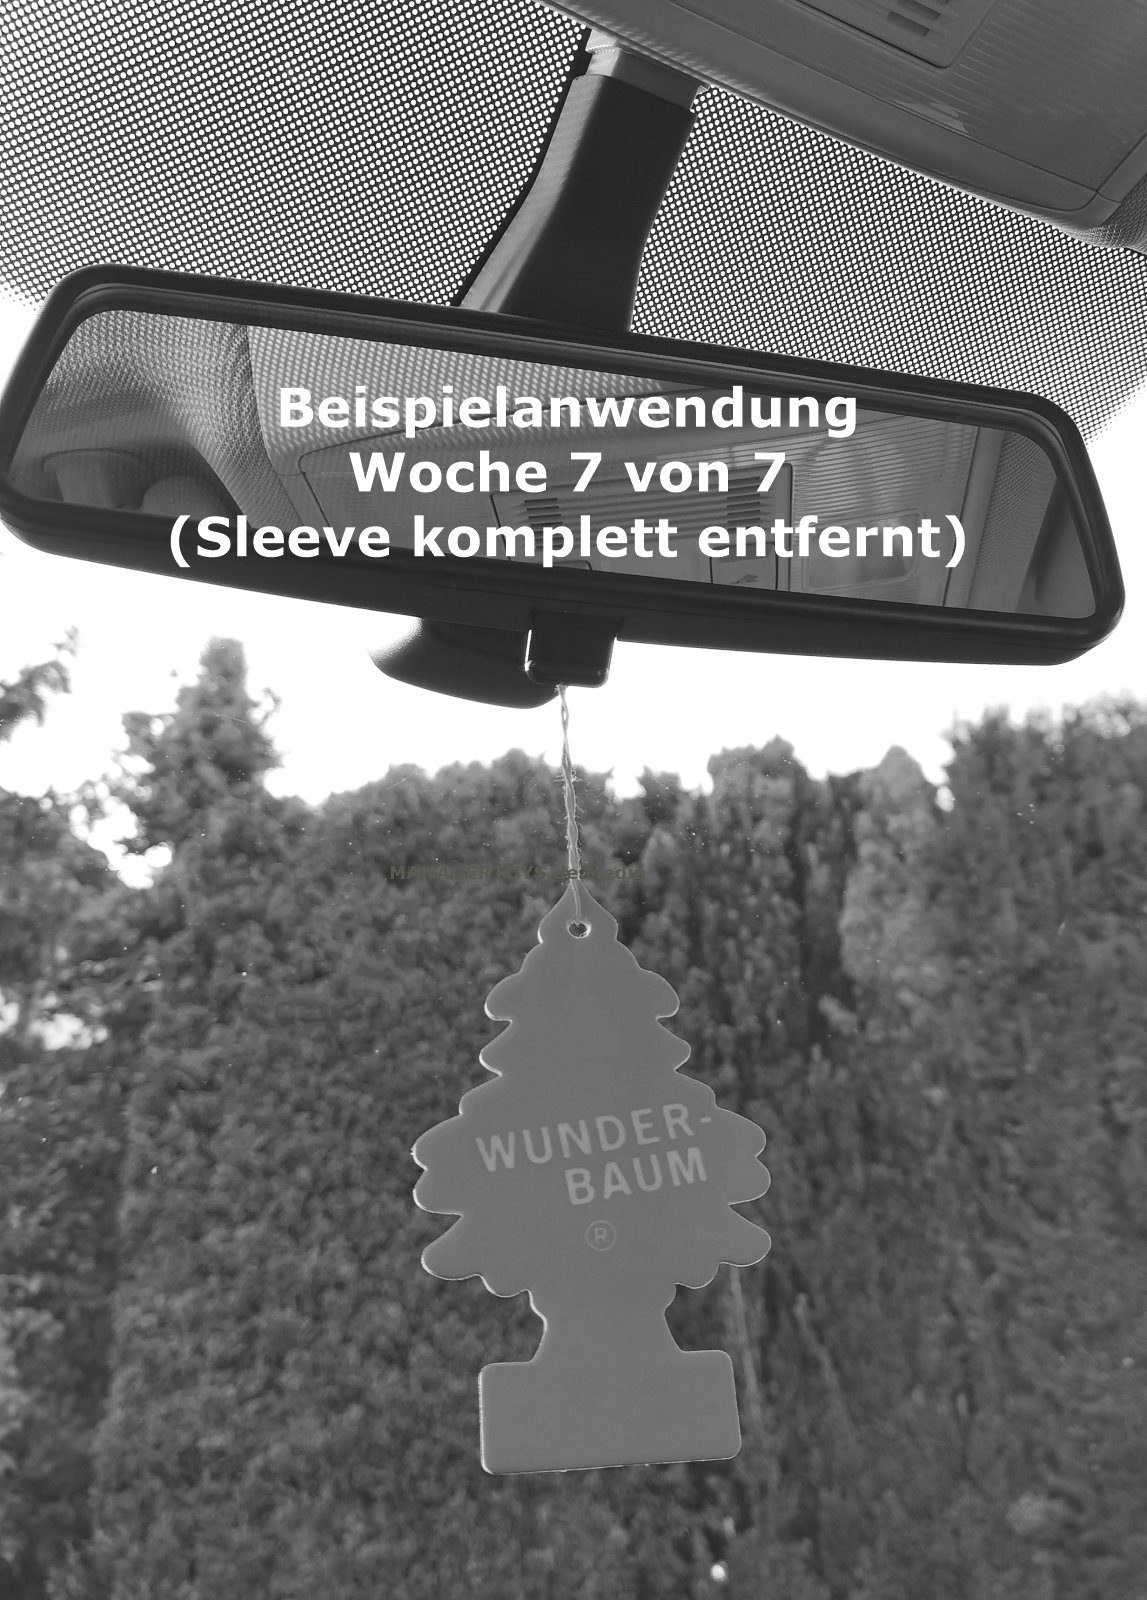 3er 3 Wunderbaum Wunder-Baum New Duftbäumchen Car Neuwagen Lufterfrischer Hänge-Weihnachtsbaum Set